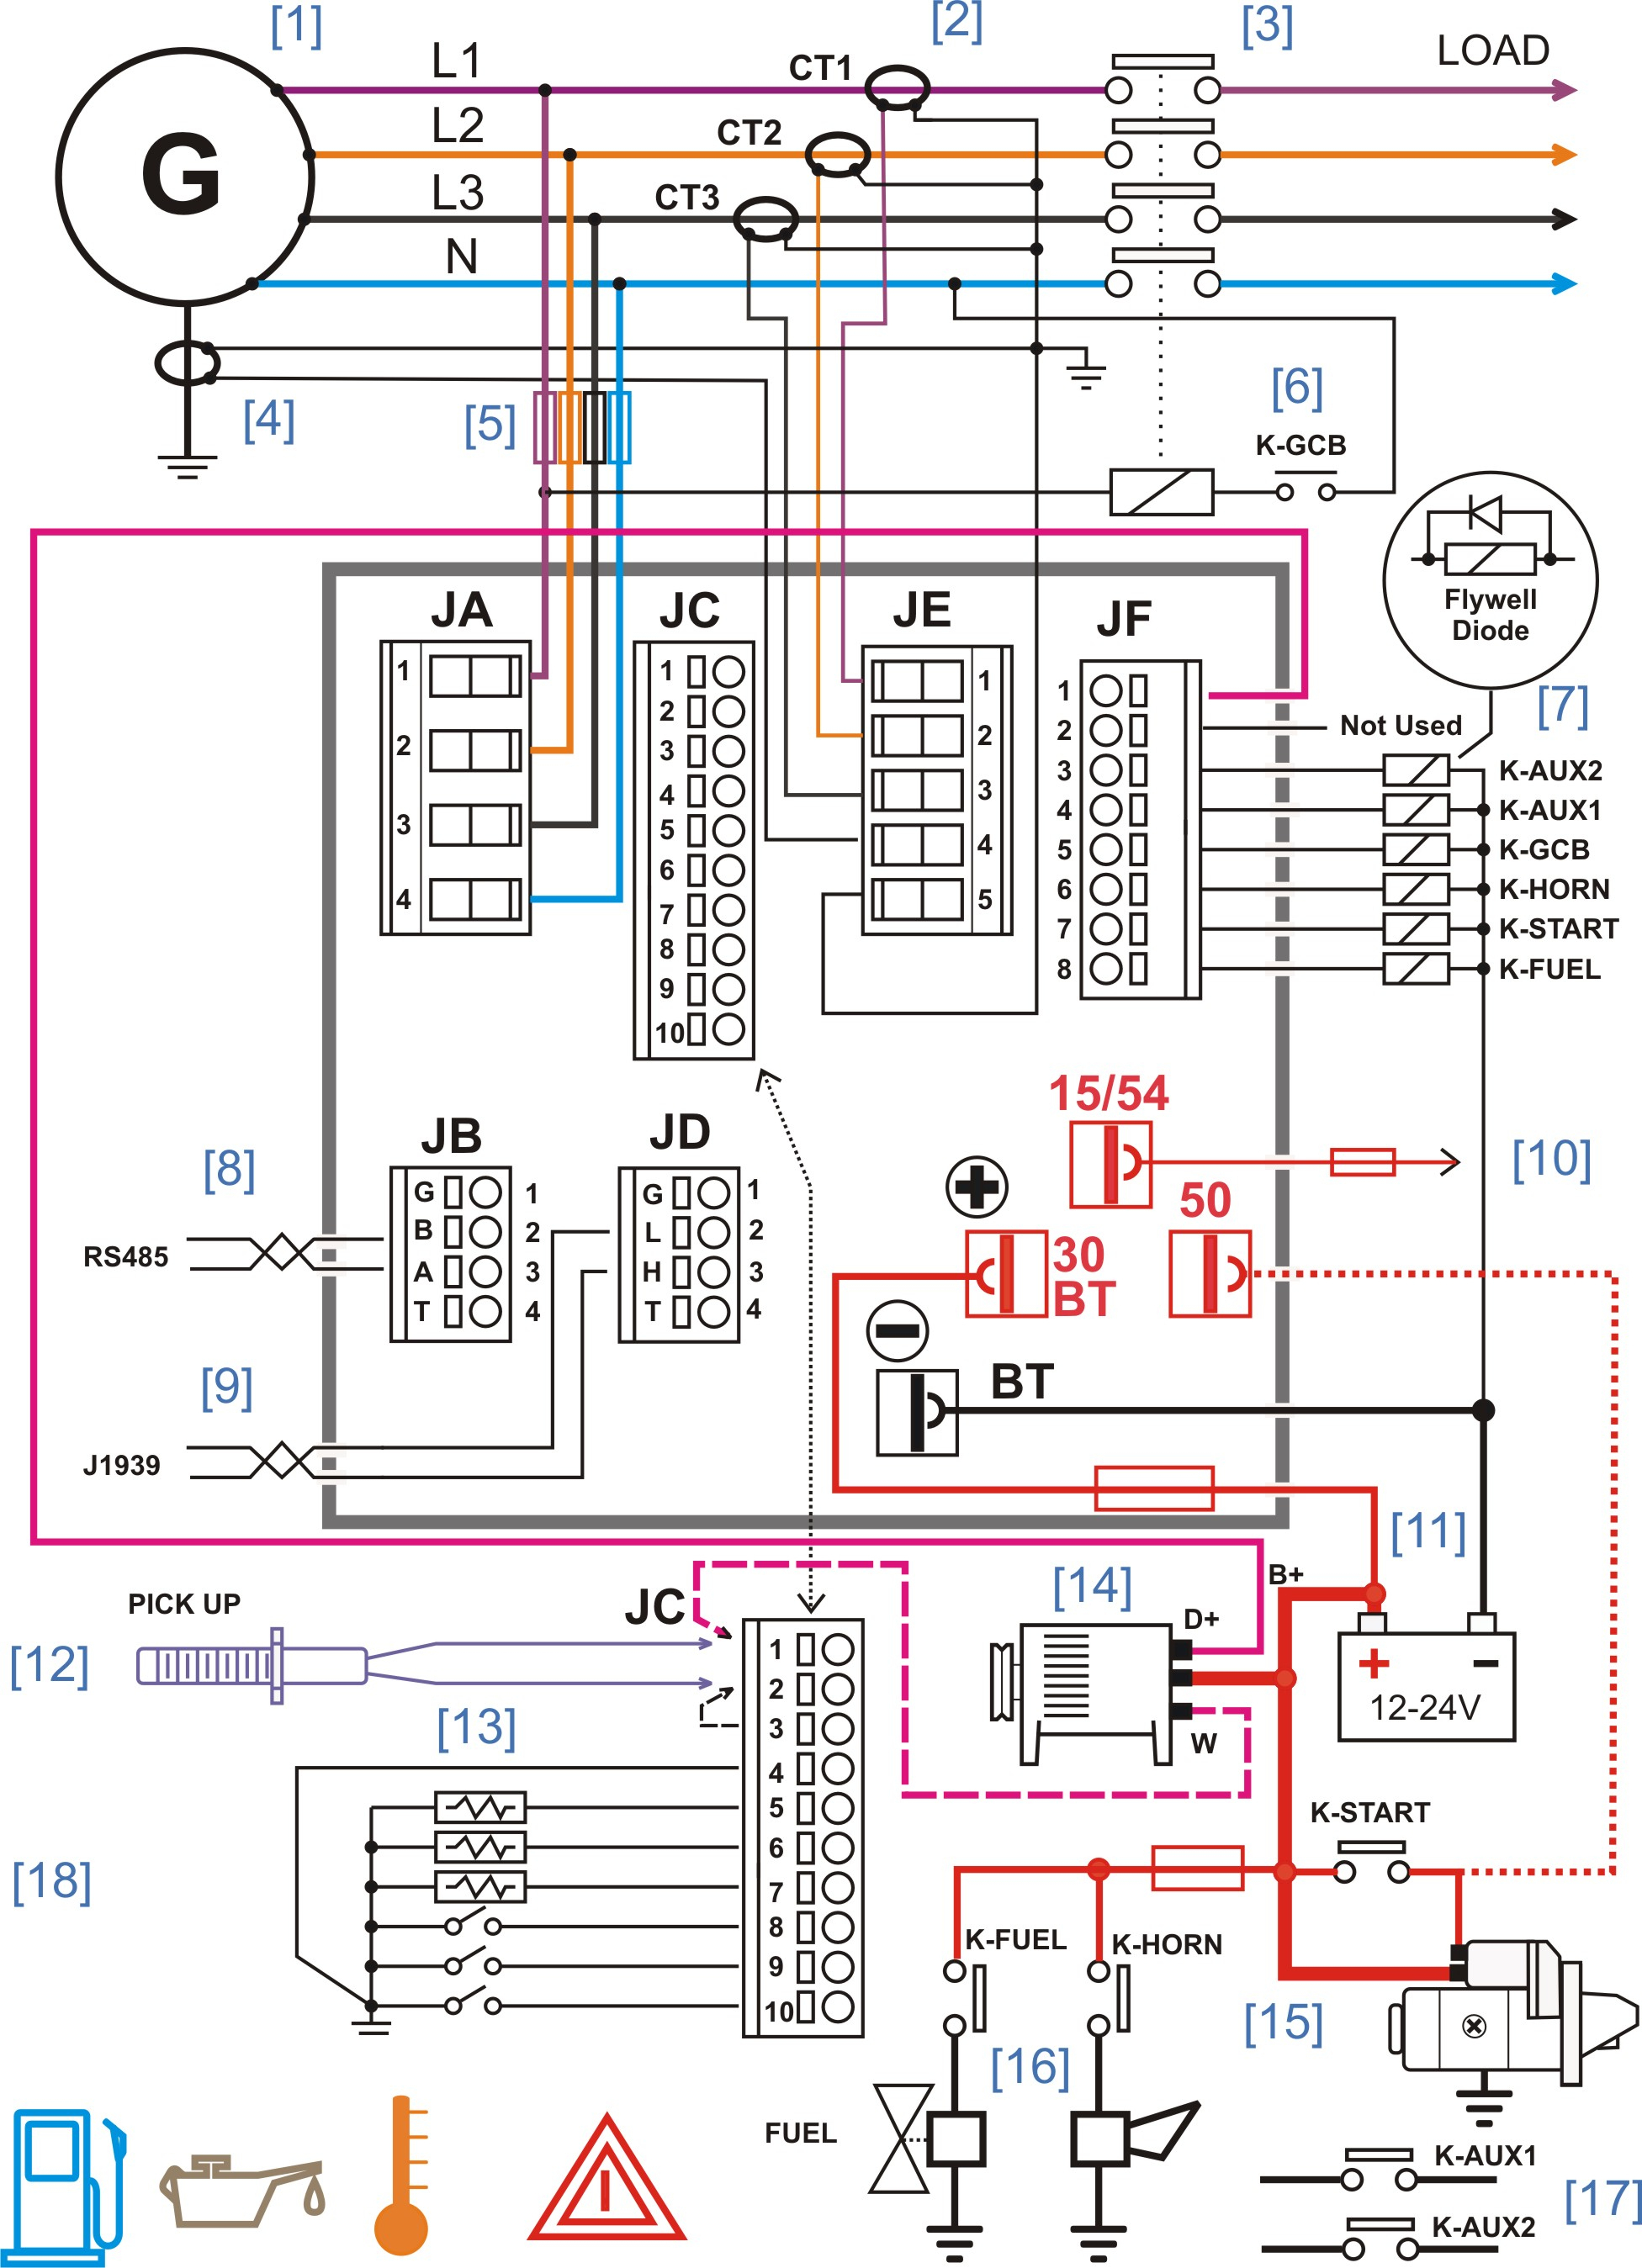 Onan Generator Wiring Schematic | Wiring Diagram - Onan Generator Wiring Diagram